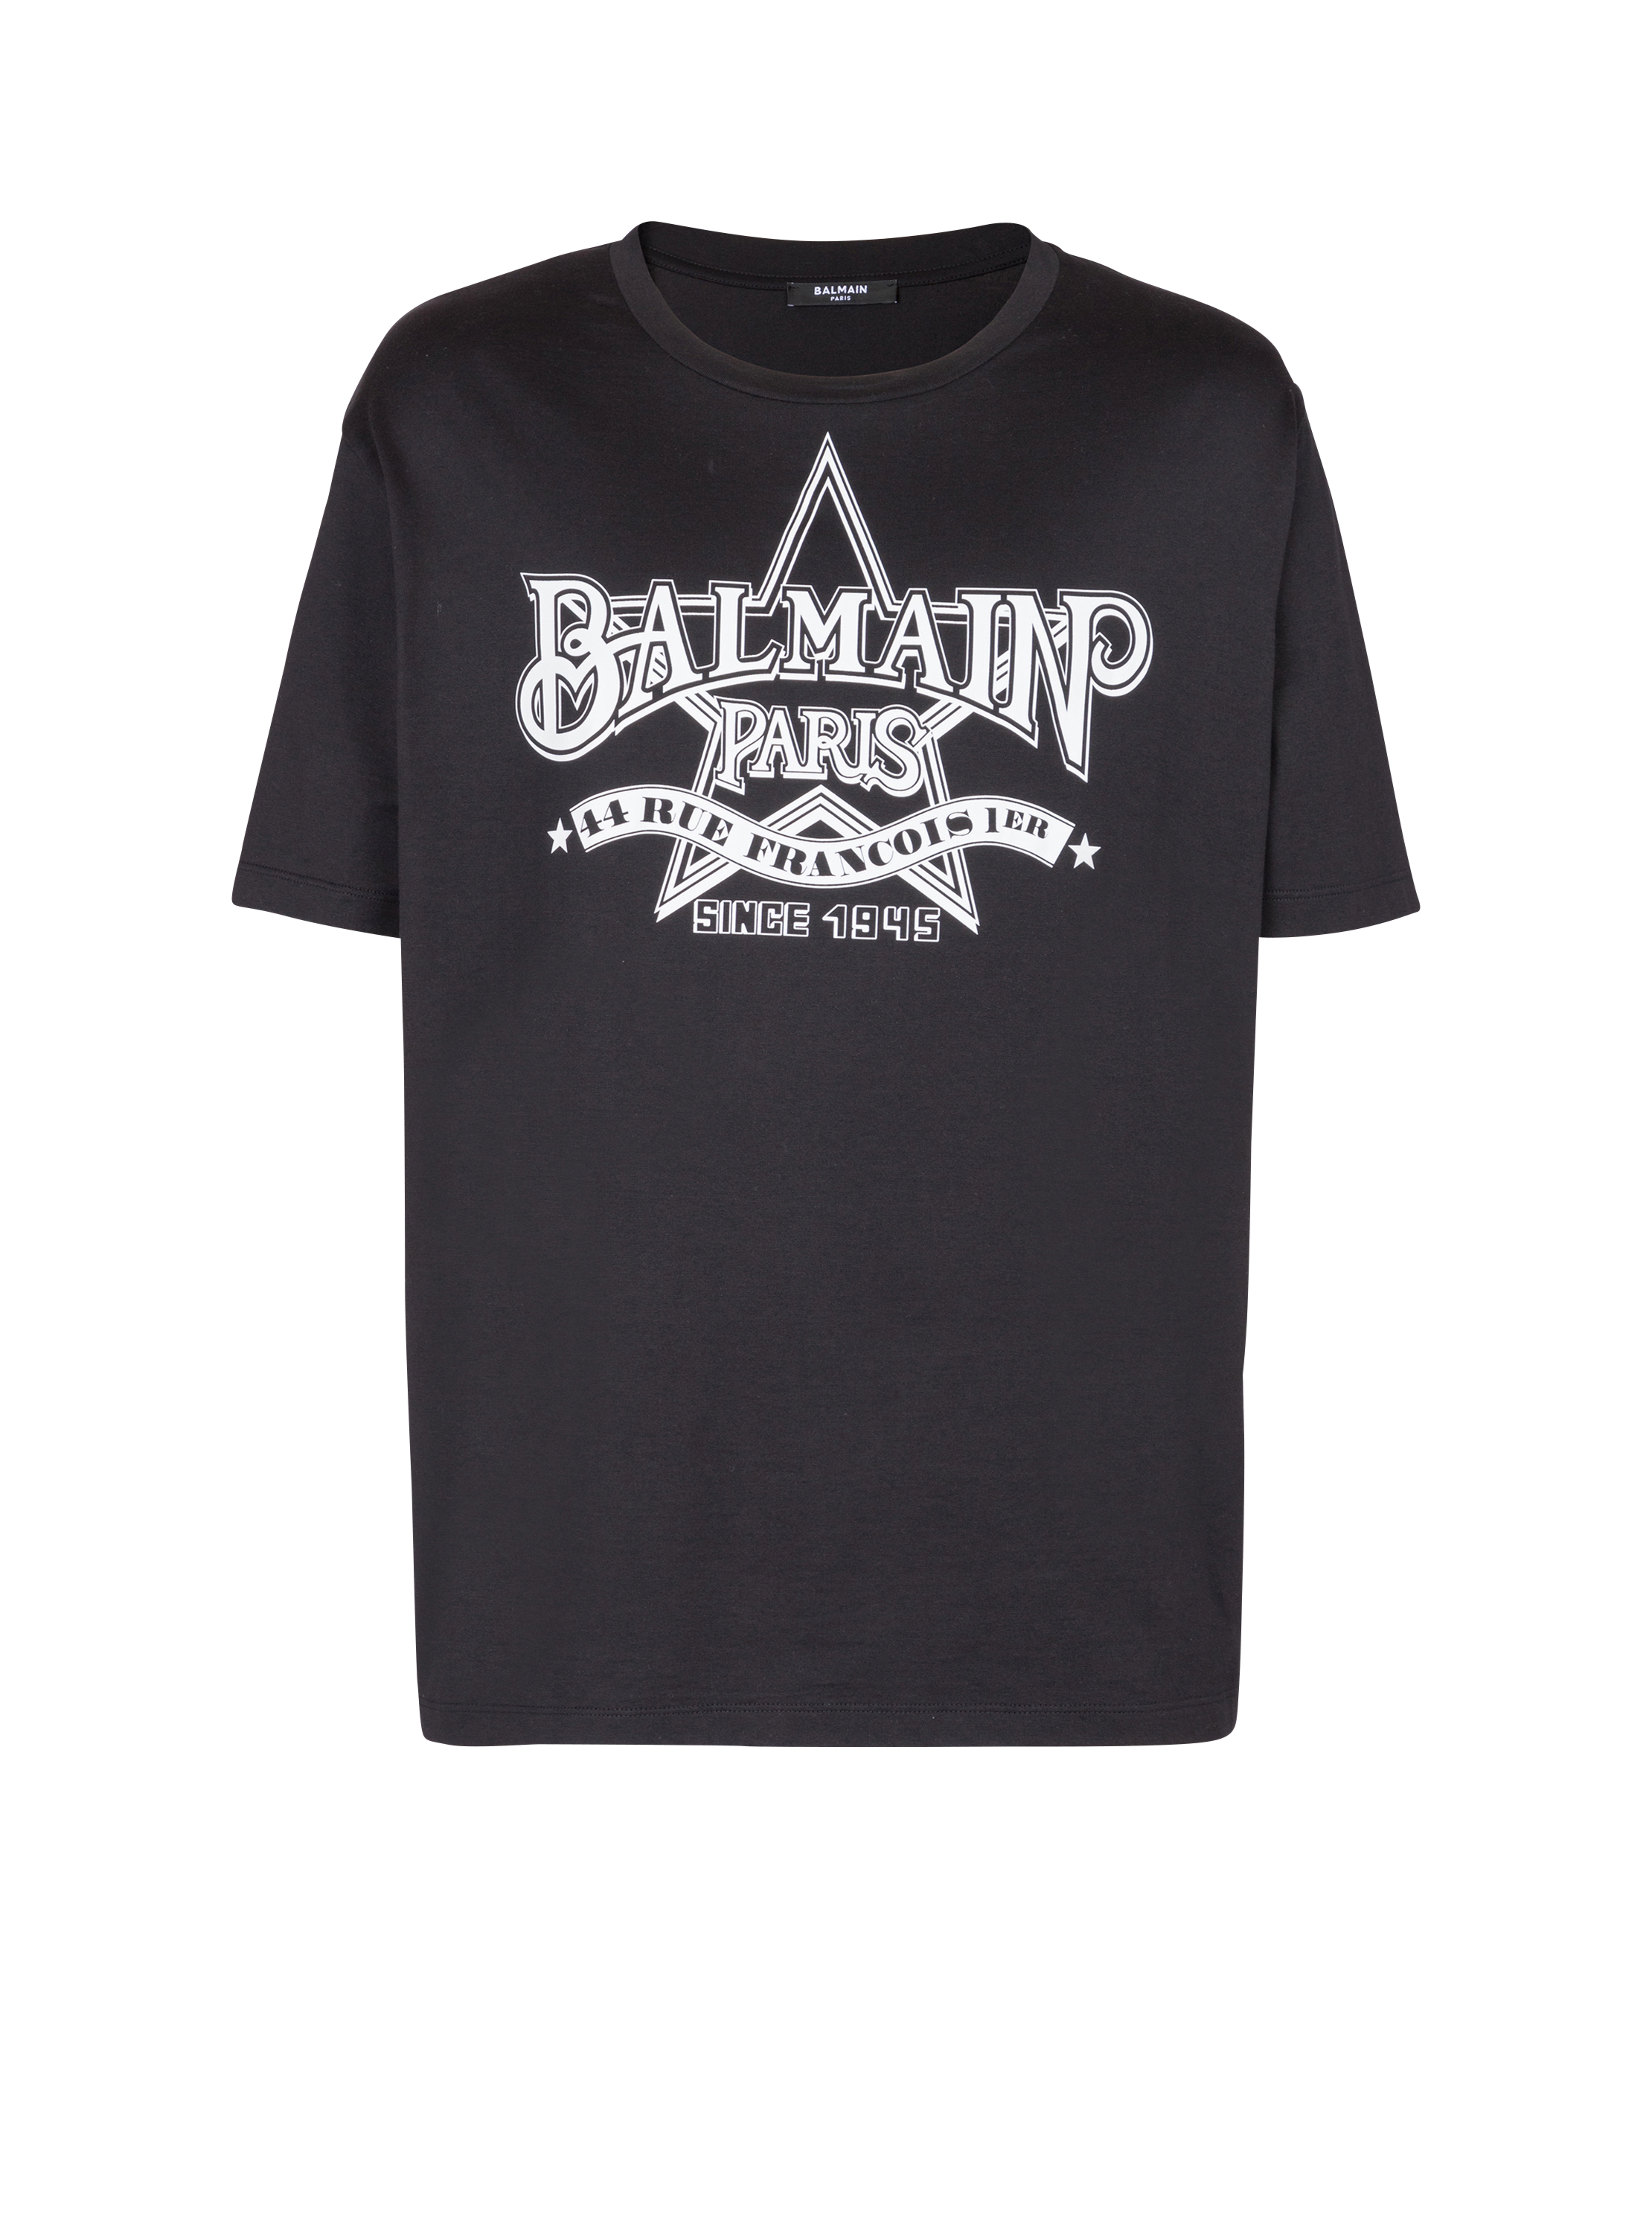 Balmain star T-shirt